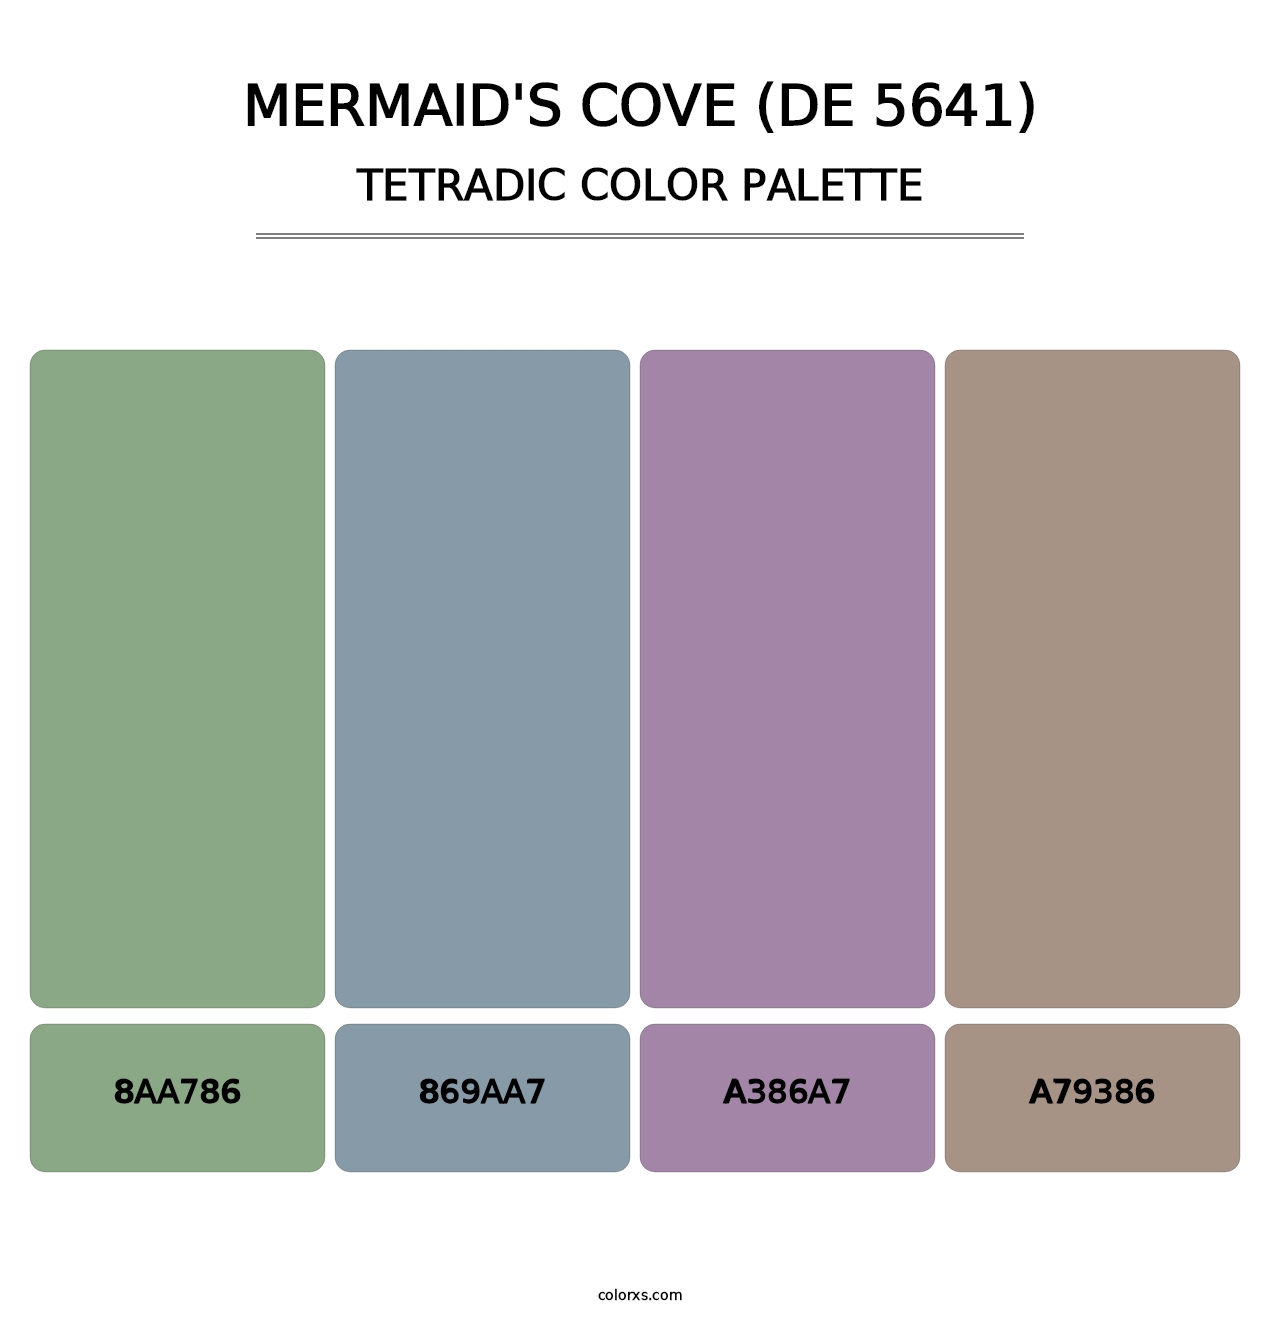 Mermaid's Cove (DE 5641) - Tetradic Color Palette